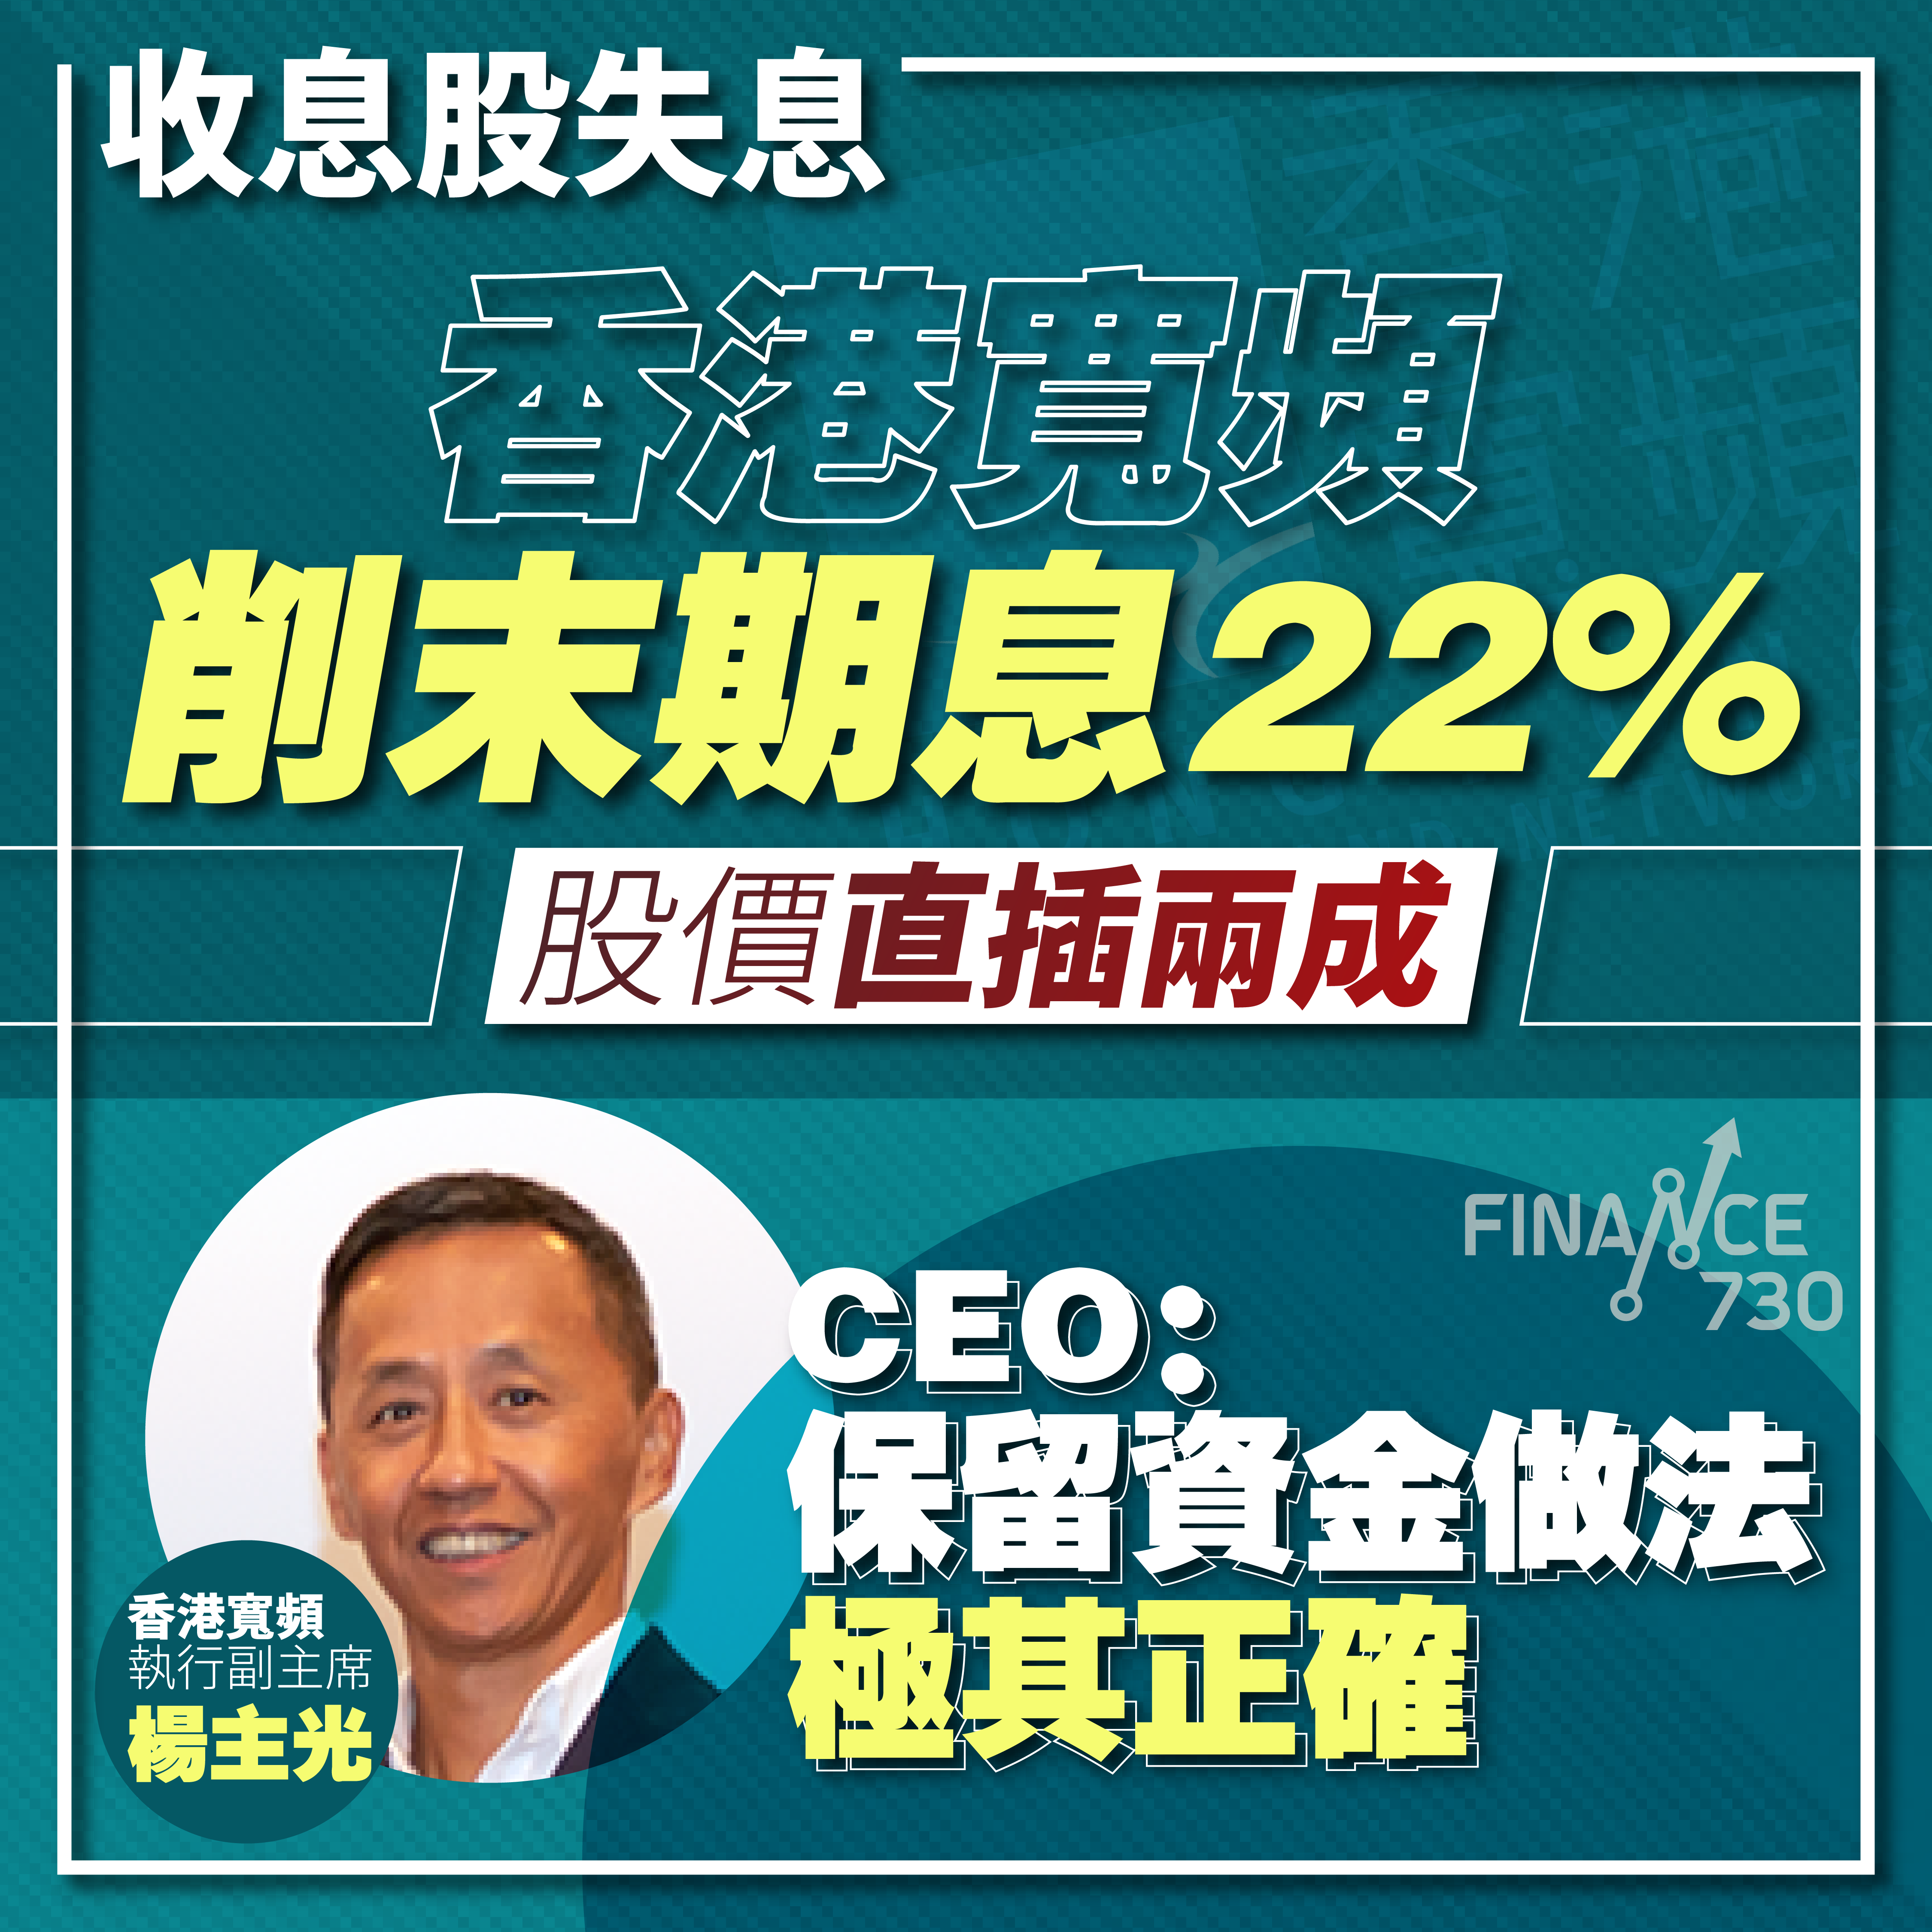 【收息股失息】香港寬頻削末期息22% 股價直插兩成